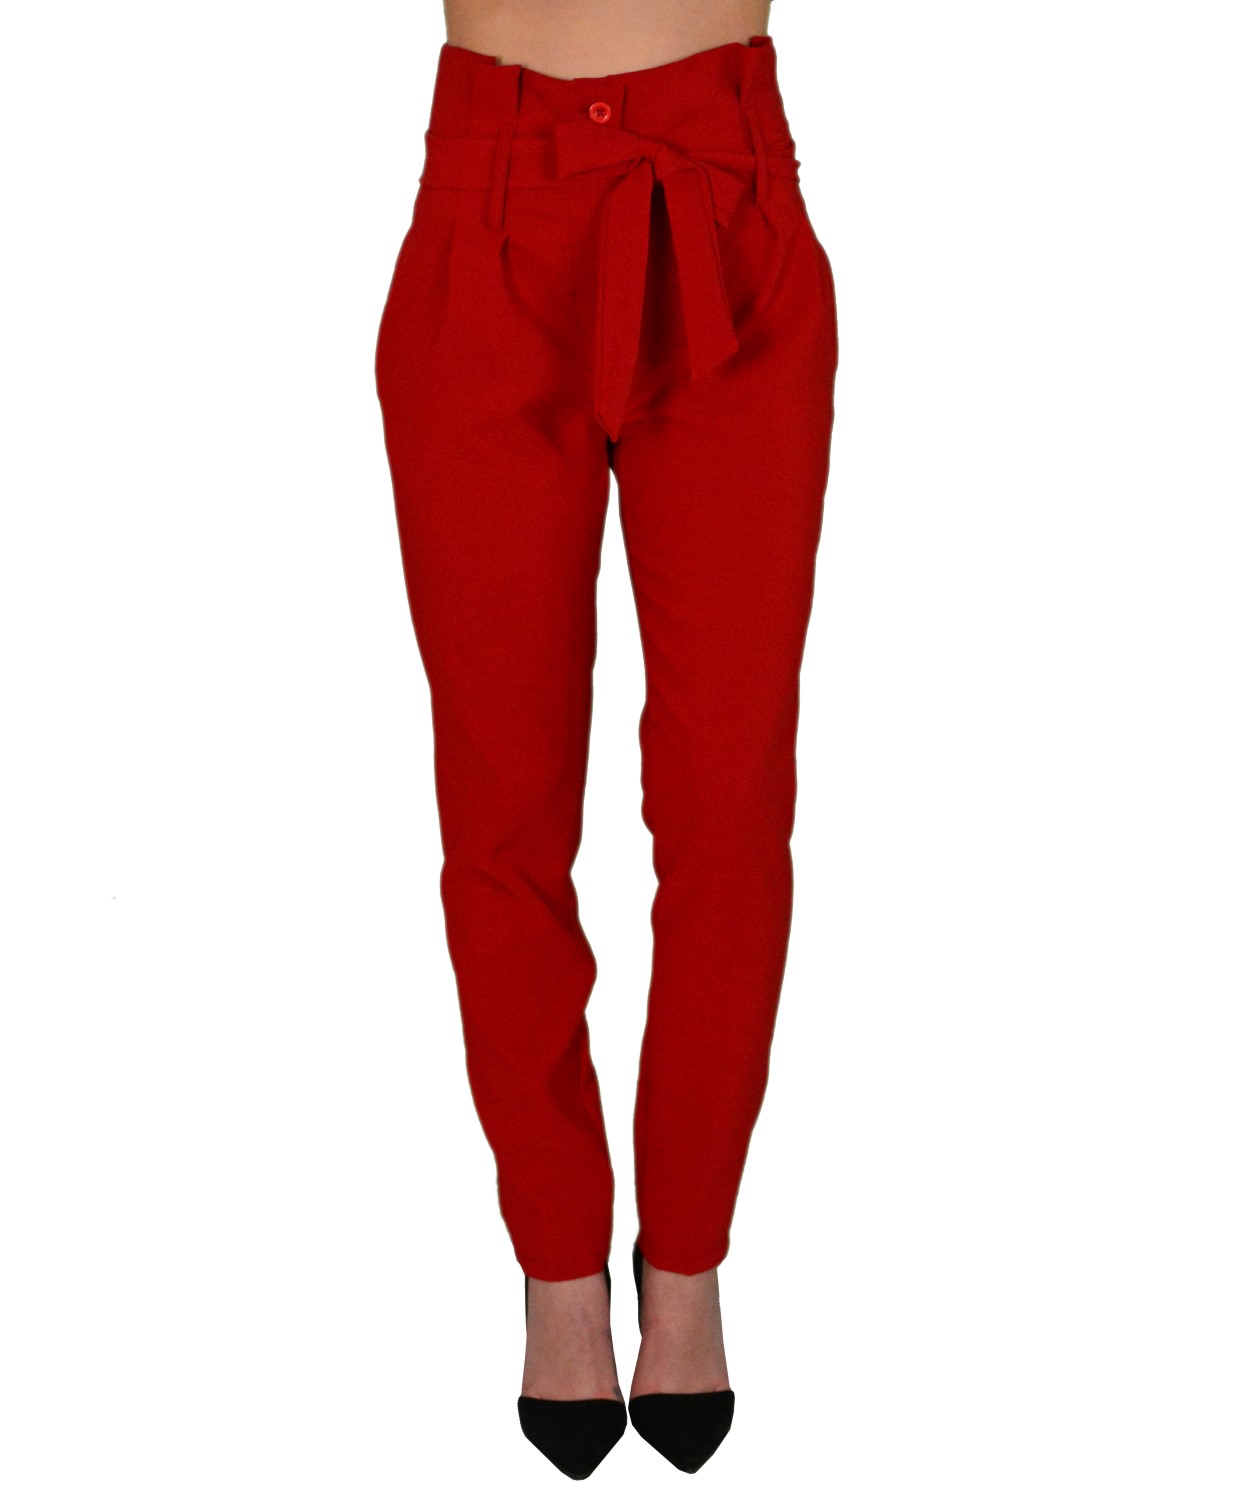 Γυναικεία ψηλόμεσο υφασμάτινο παντελόνι κόκκινο 151211W